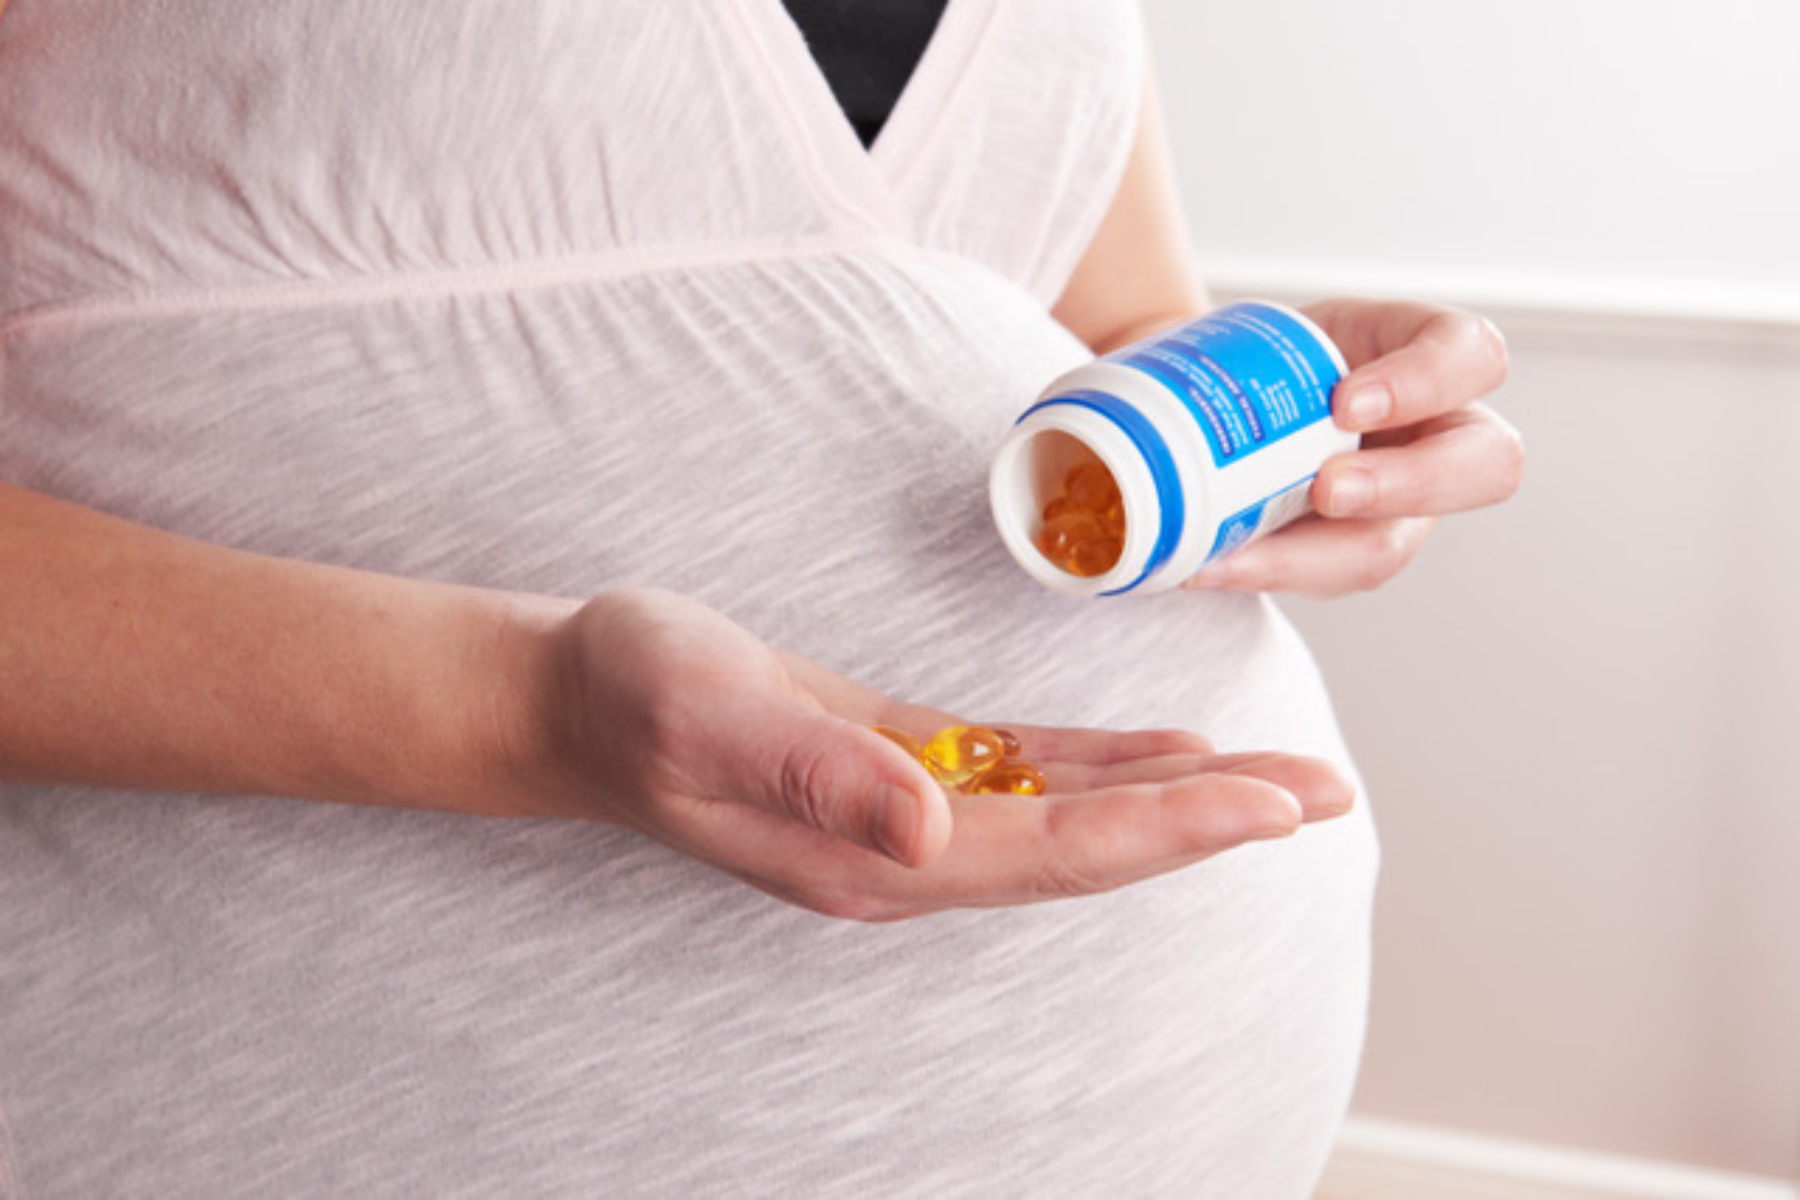 Ωμέγα 3 εγκυμοσύνη: Πόσο υγιεινό είναι να παίρνετε συμπληρώματα Ω3 στην εγκυμοσύνη;